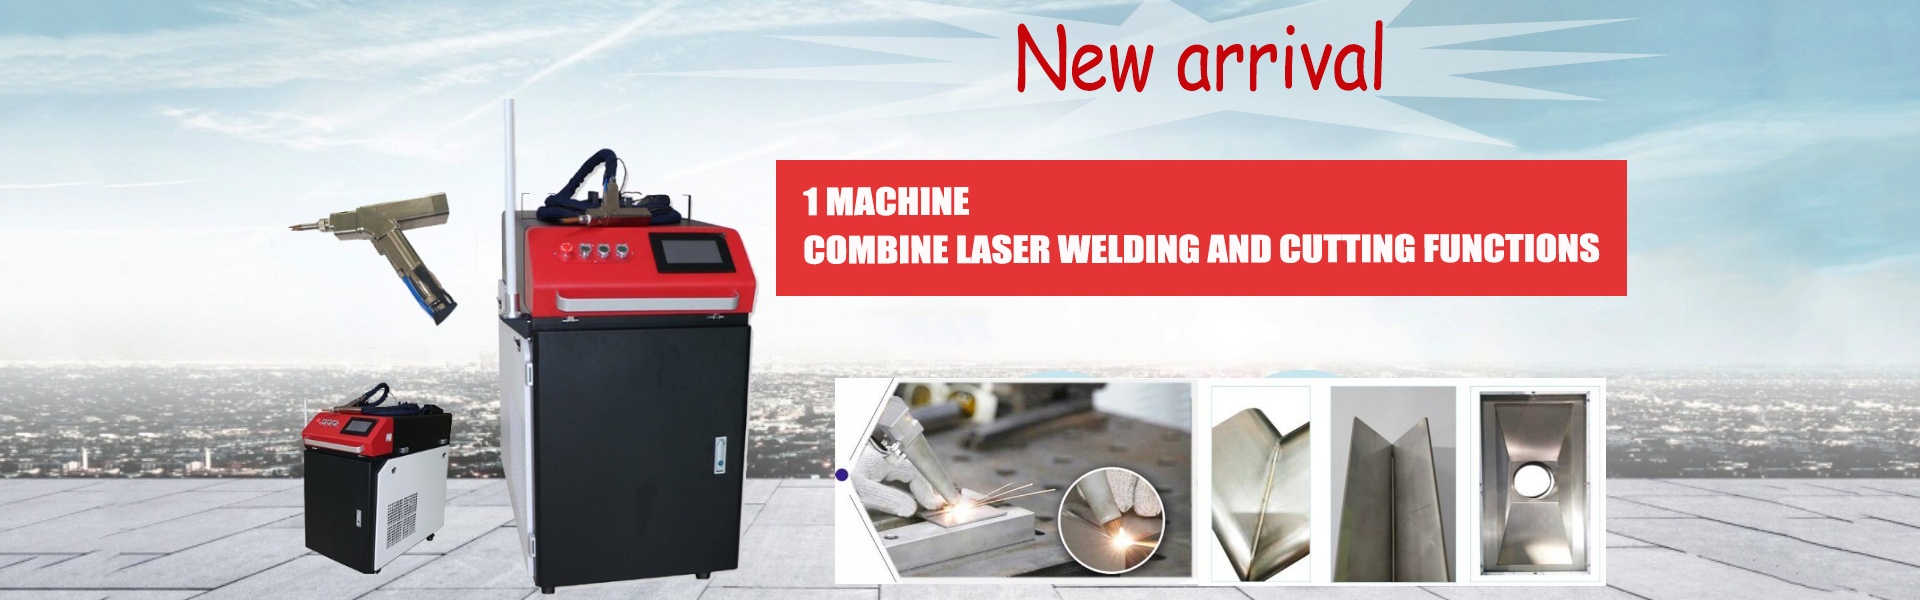 laser welding machine,laser marking machine,laser welder,Hunan Youmir Laser Technology Co., Ltd.